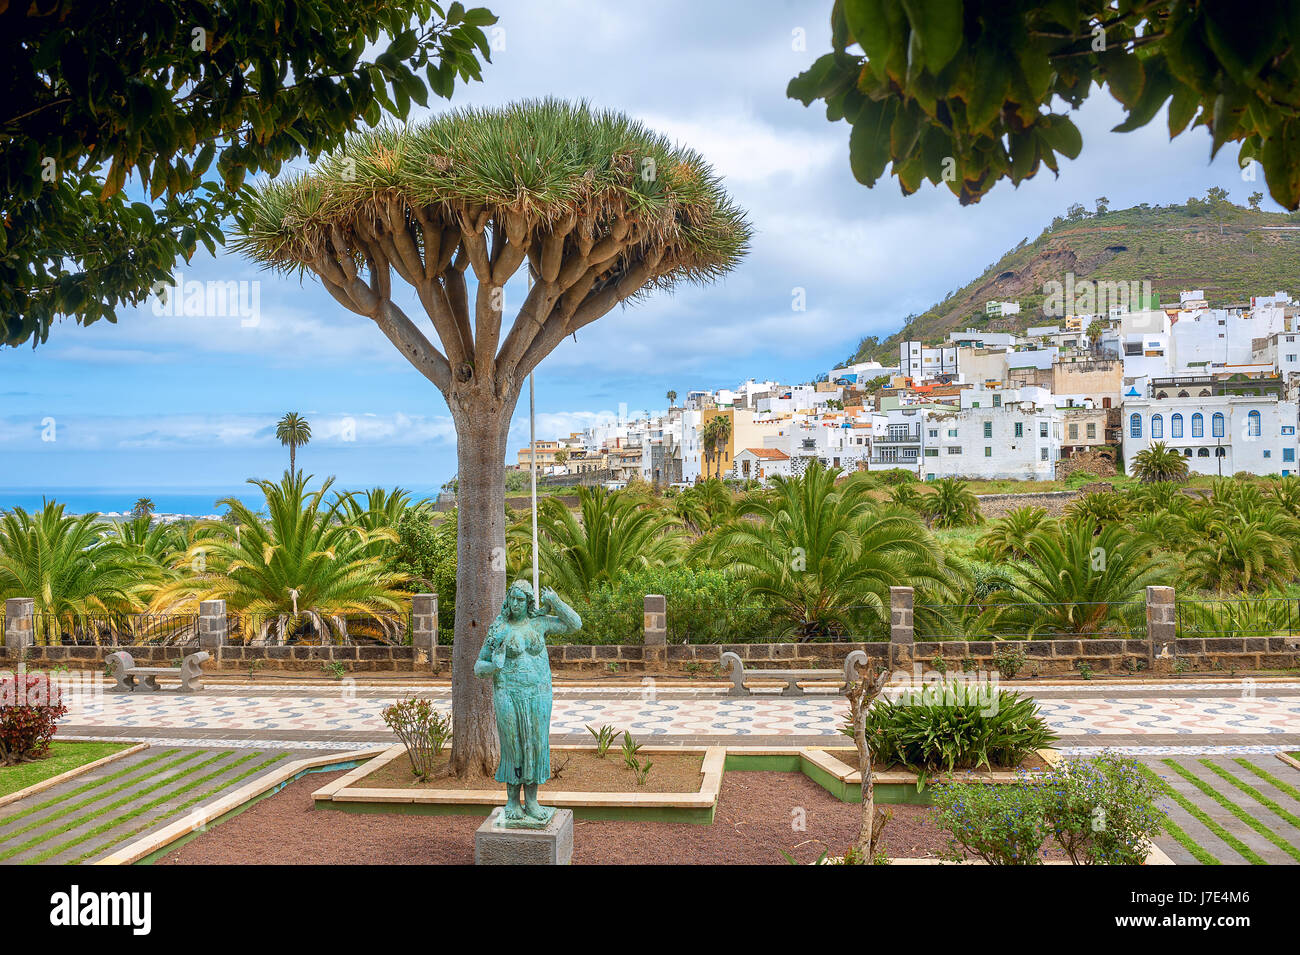 Vista del barrio residencial de palm park en Las Palmas. Gran Canaria, España Foto de stock